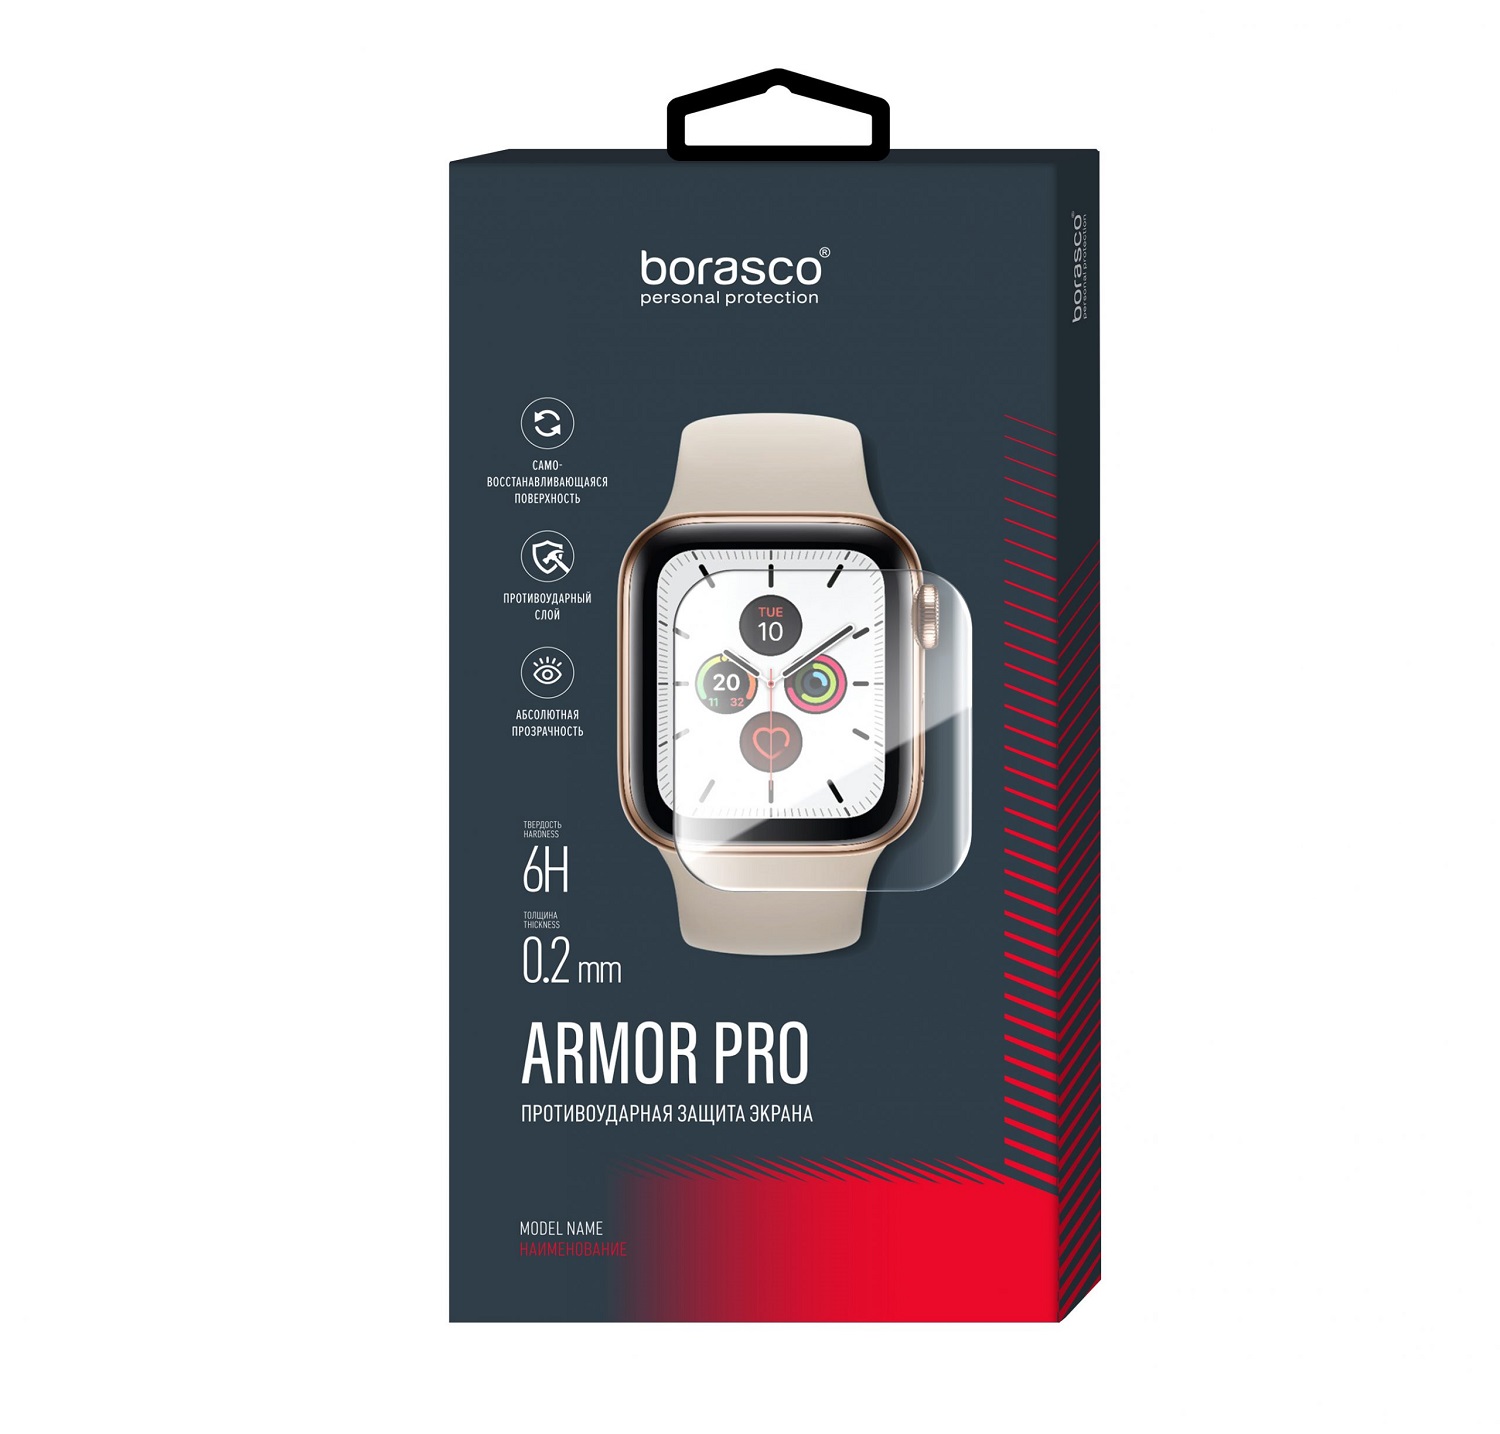 Защита экрана BoraSCO Armor Pro для Honor Band 2 защита экрана borasco armor pro для amazfit pace